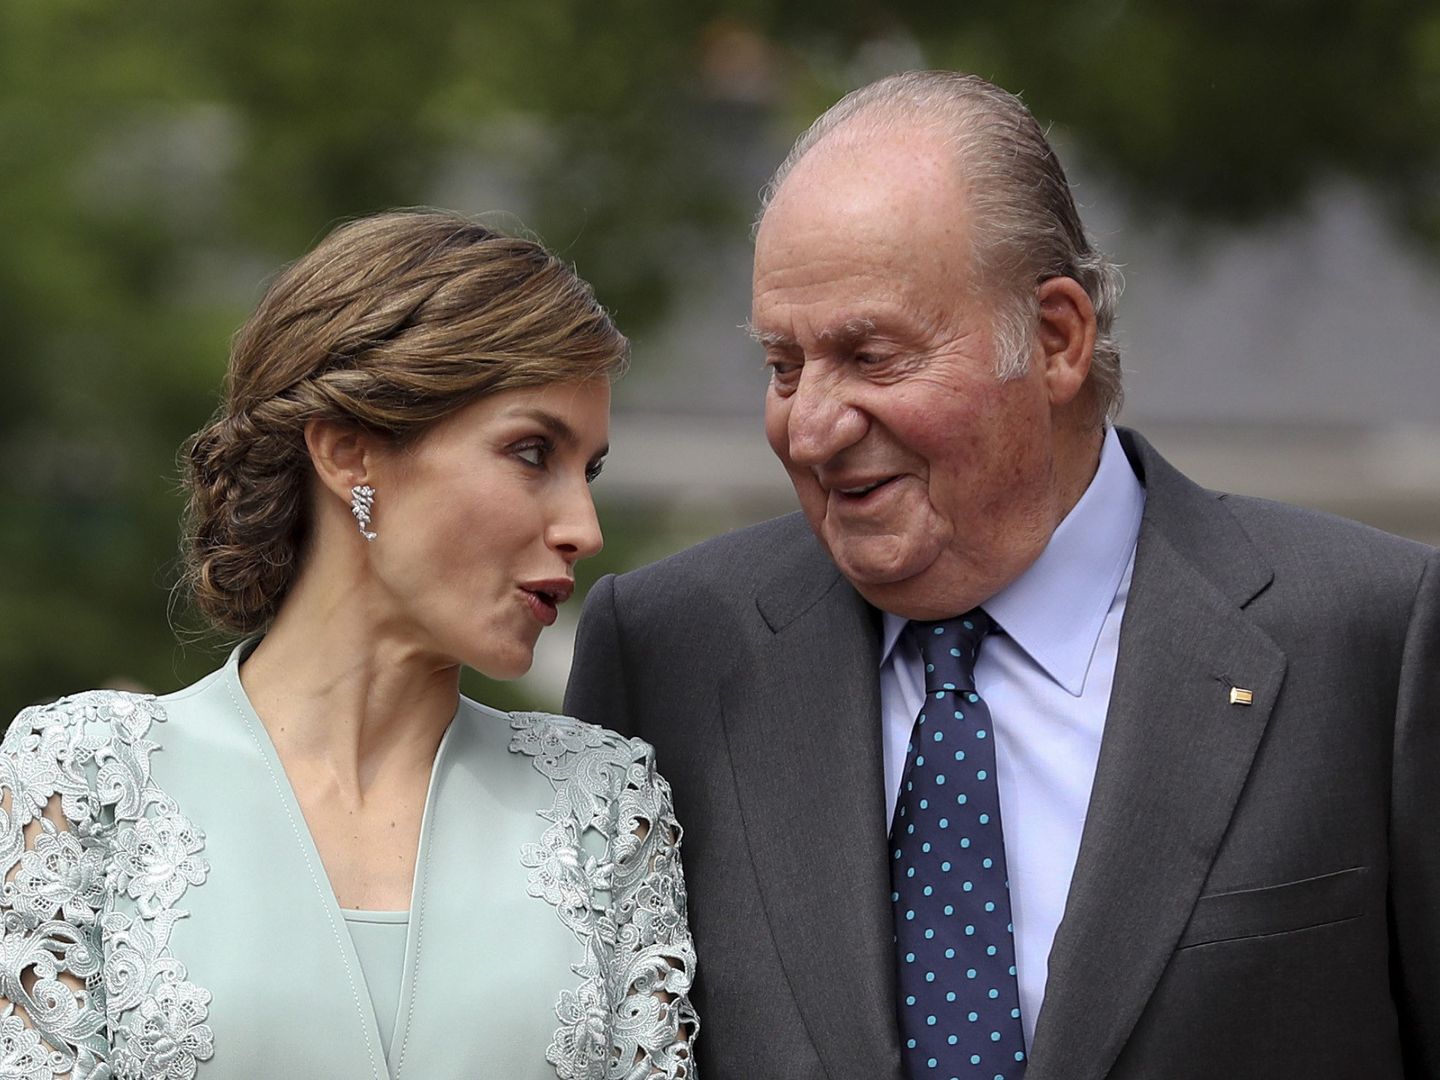 La reina Letizia y don Juan Carlos conversan en la comunión de la infanta Sofía. (EFE)